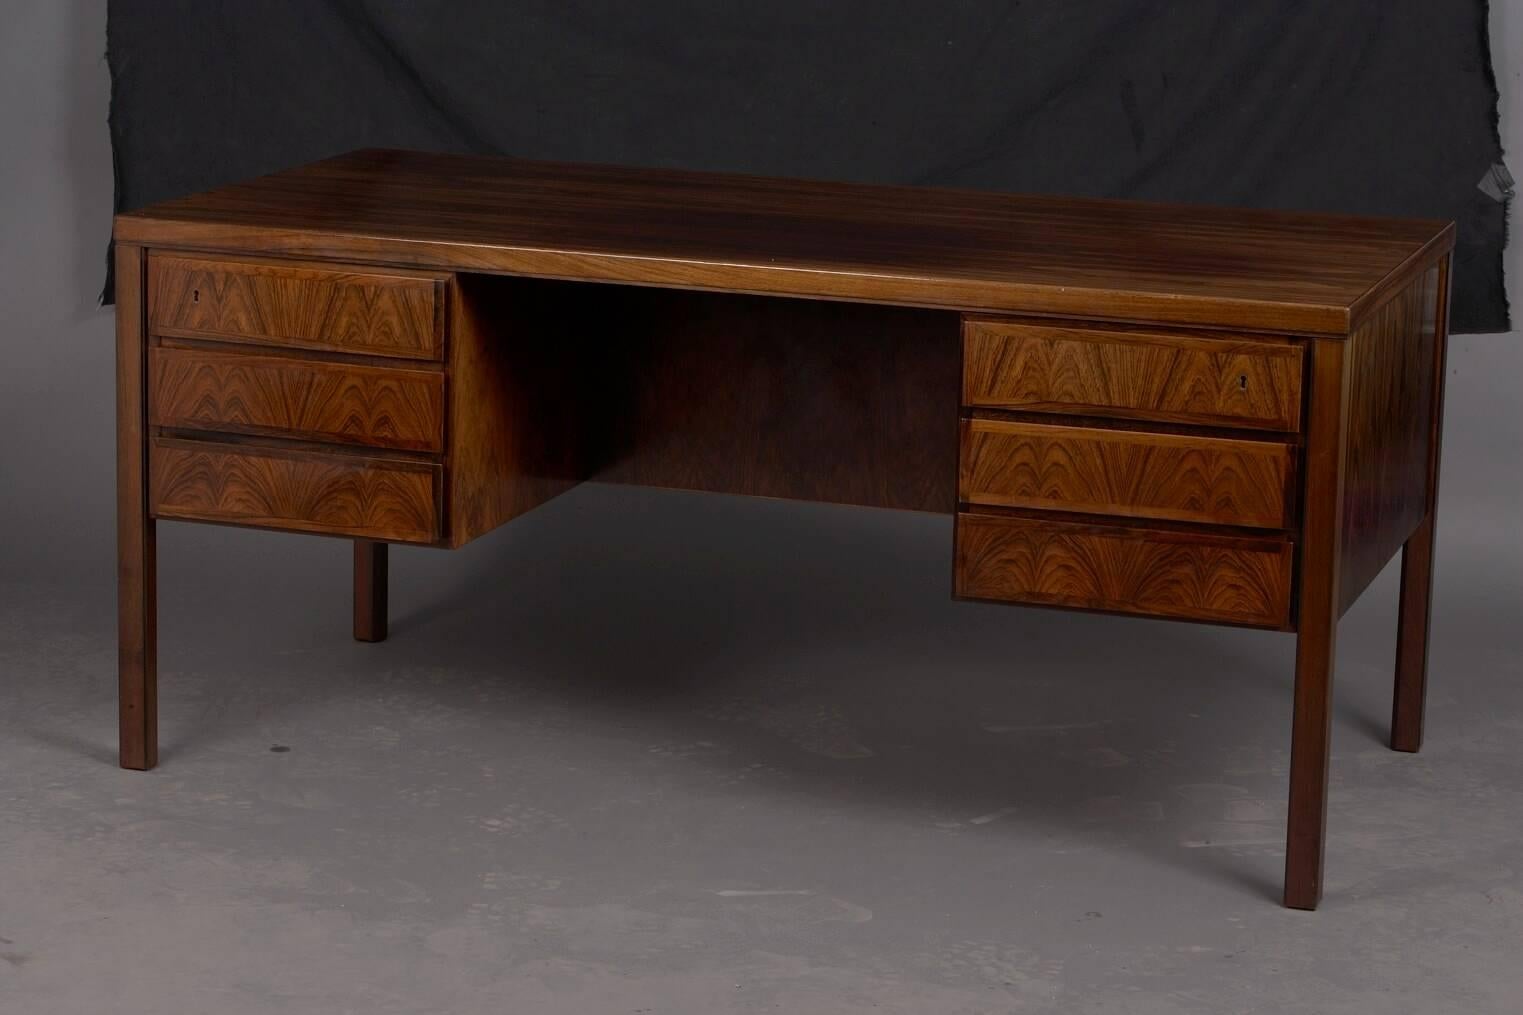 Rosewood model 77 desk by Gunni Omann for Omann Jun Møbelfabrik.